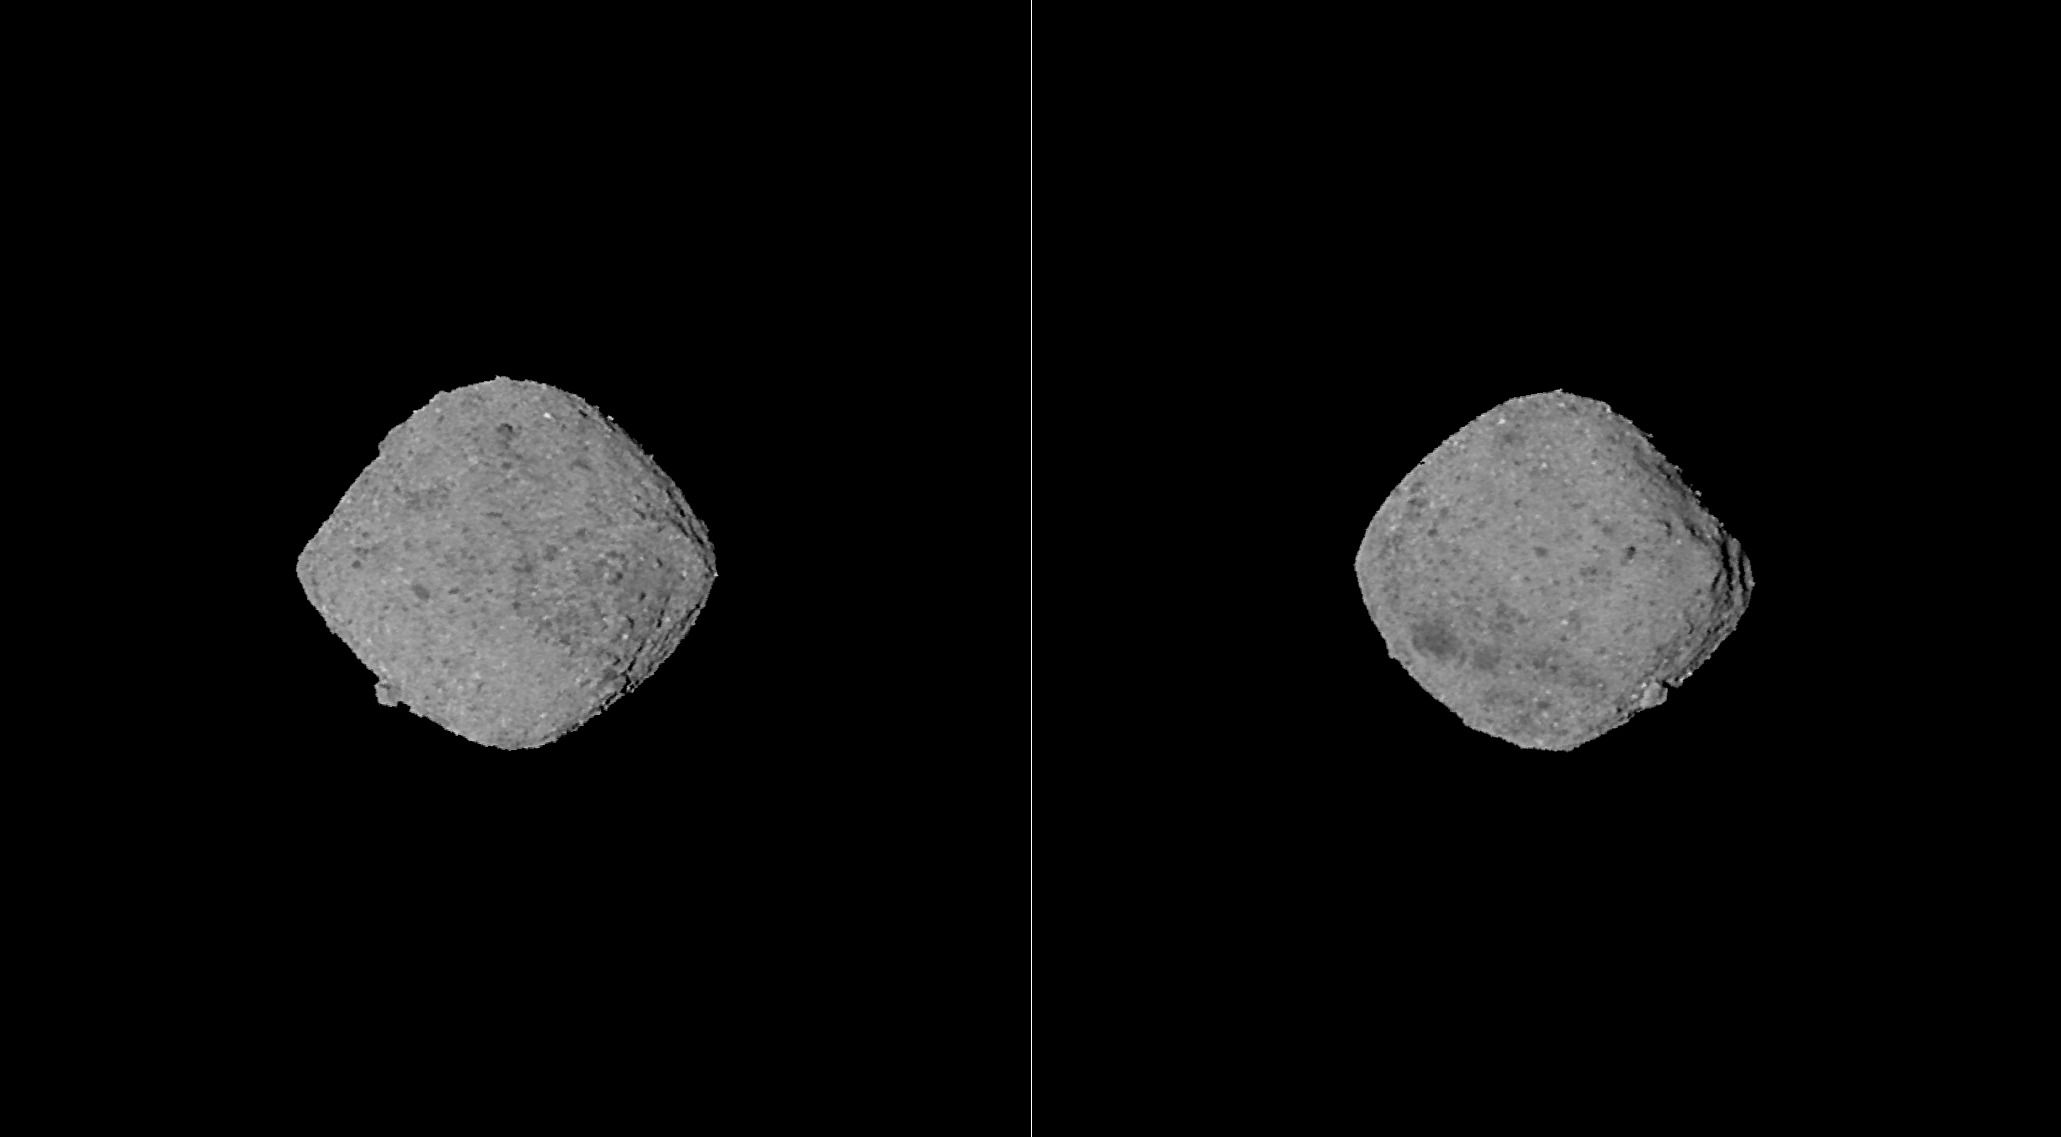 Астрономи отримали фото поверхні астероїда Бенну. Очікується, що зонд OSIRIS-REx скине на Землю капсулу з грунтом астероїда у вересні 2023 року.